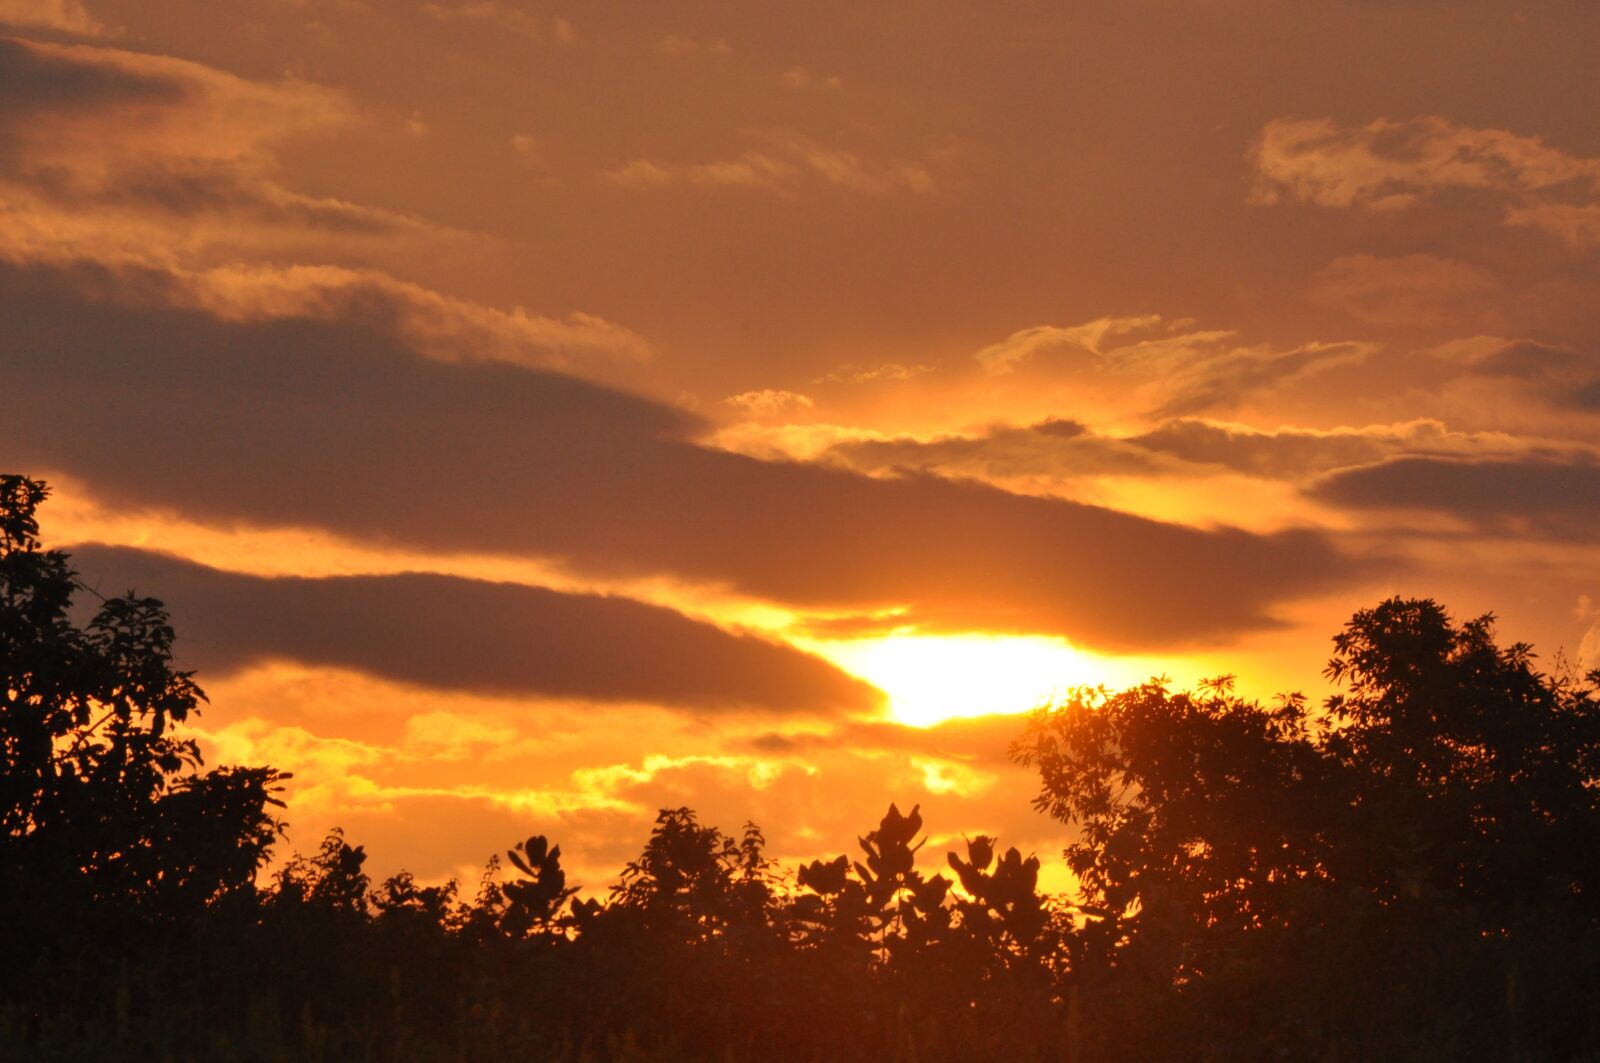 Nikon D90 sample photo. Sunset, evening, nature photography